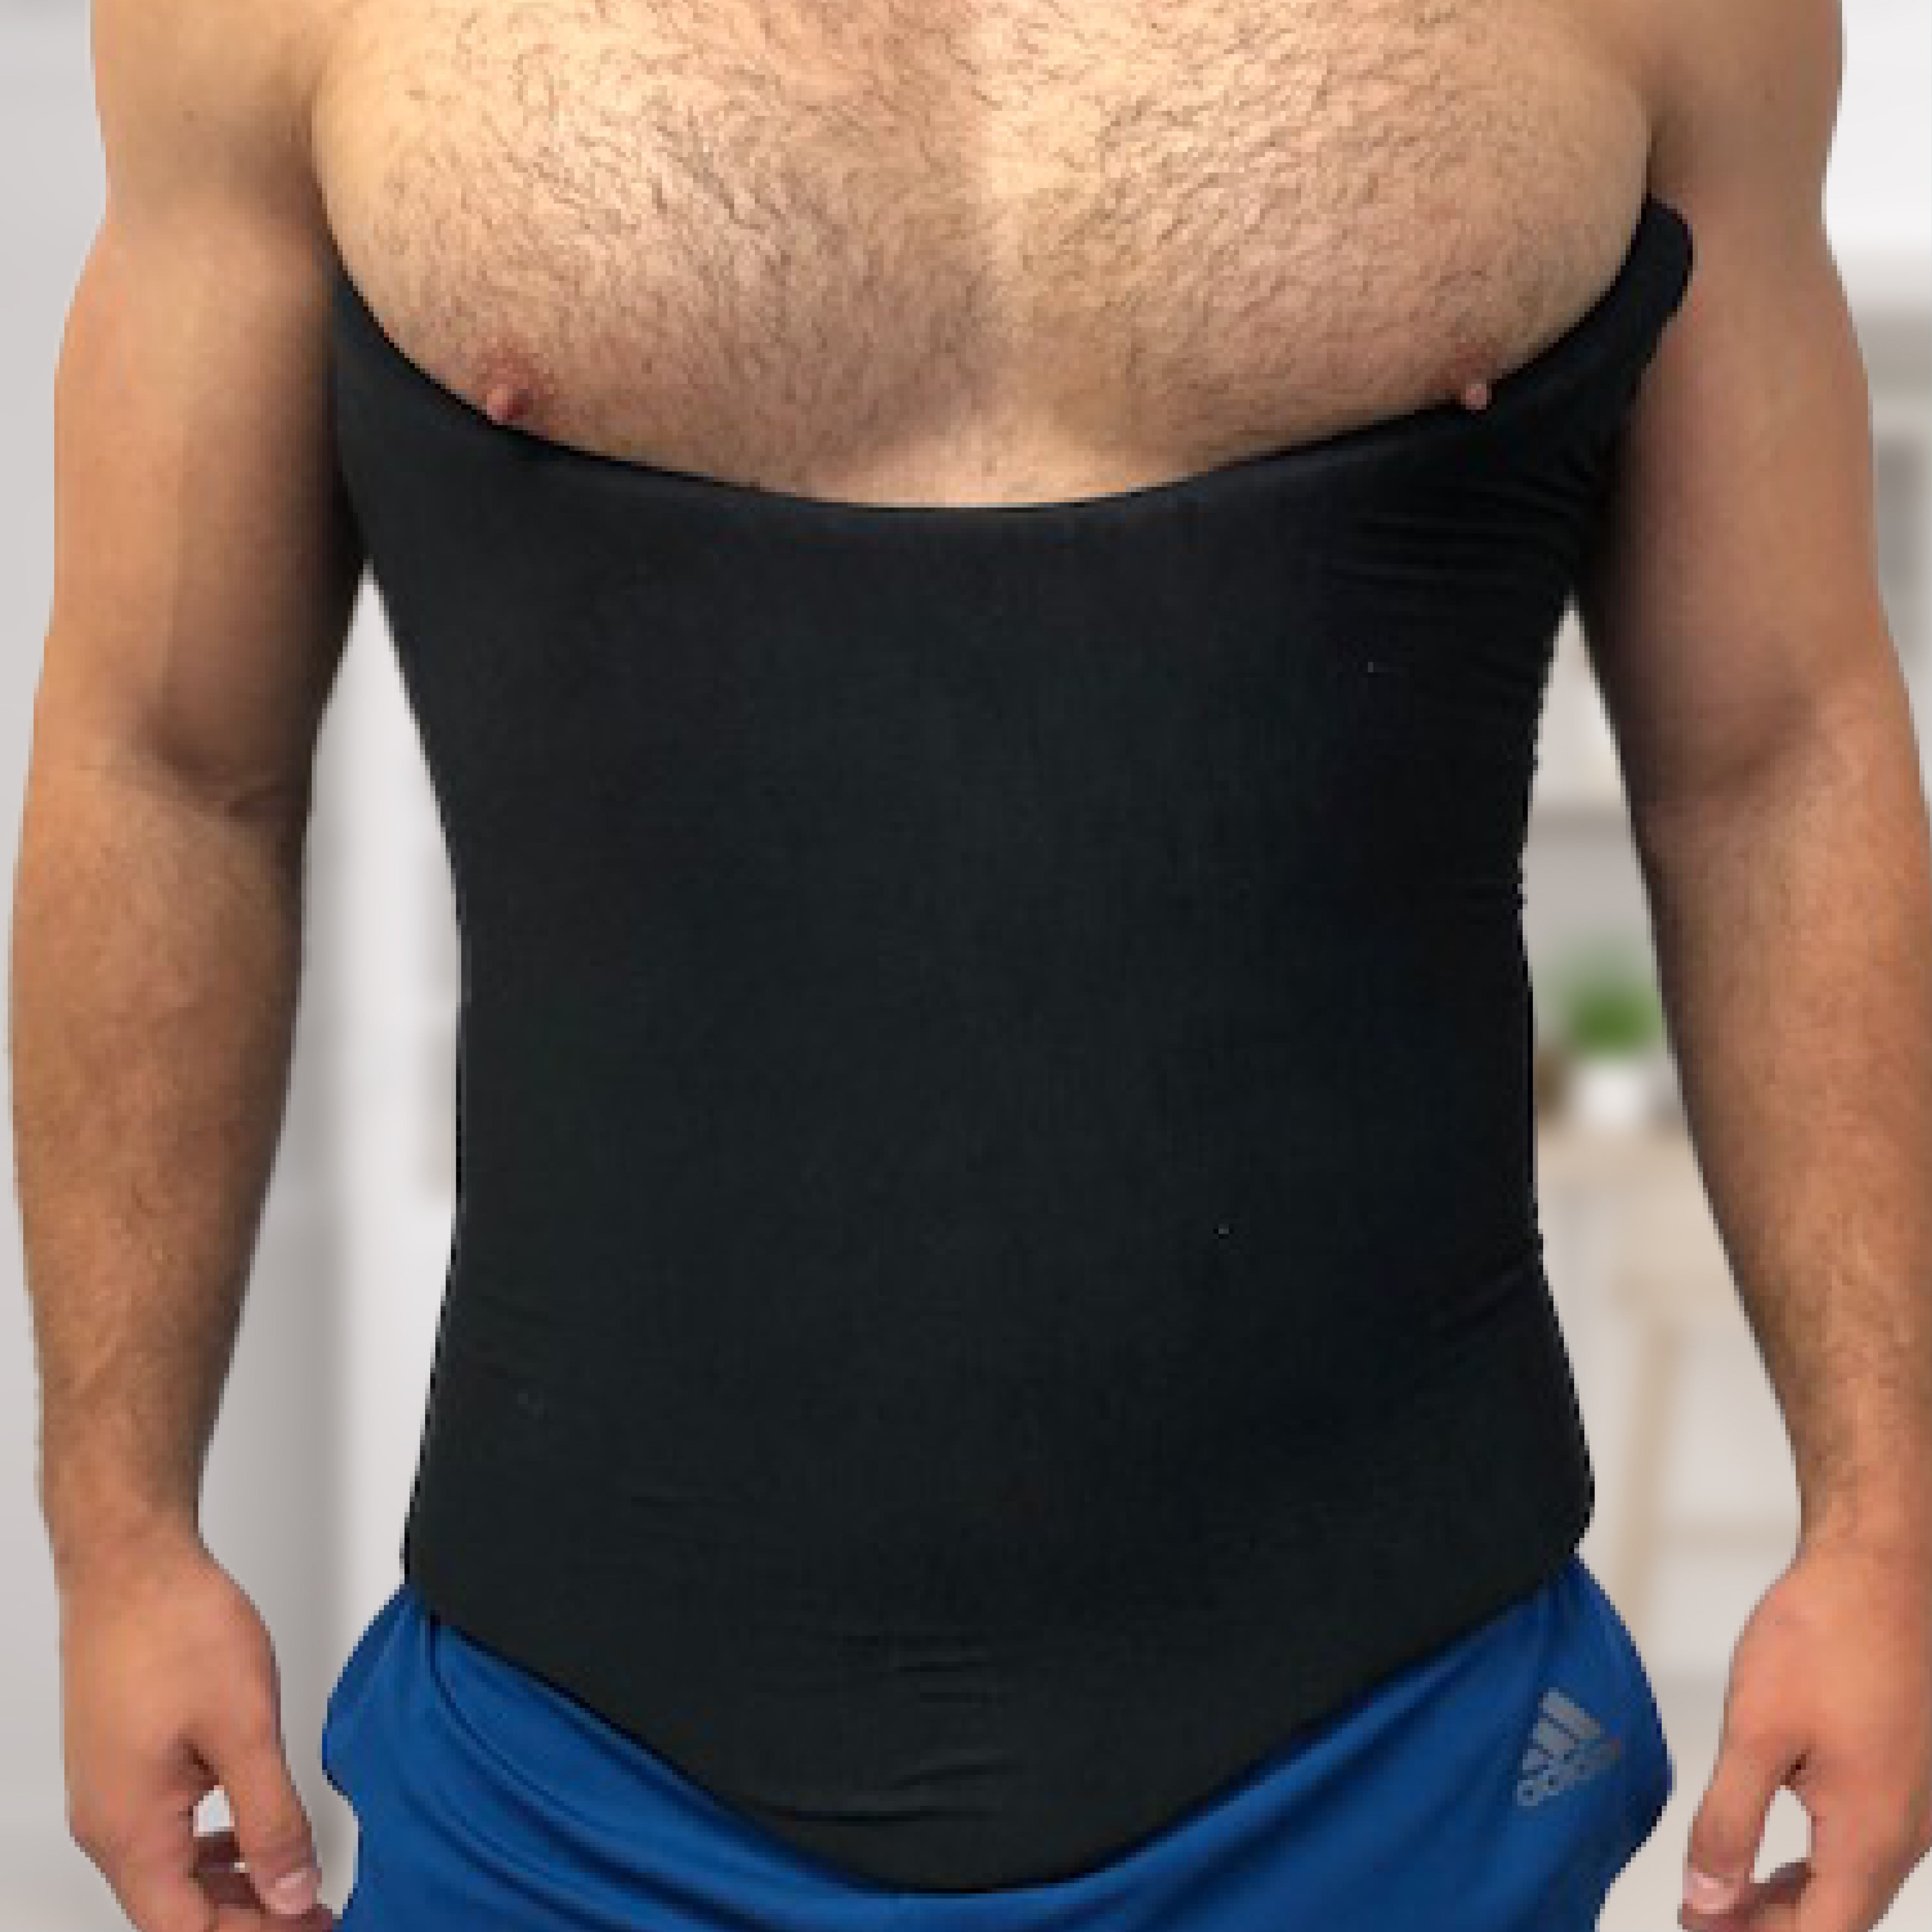 Shape's Men's Liposuction 360 Vest - Shop Now – Dr. Shape